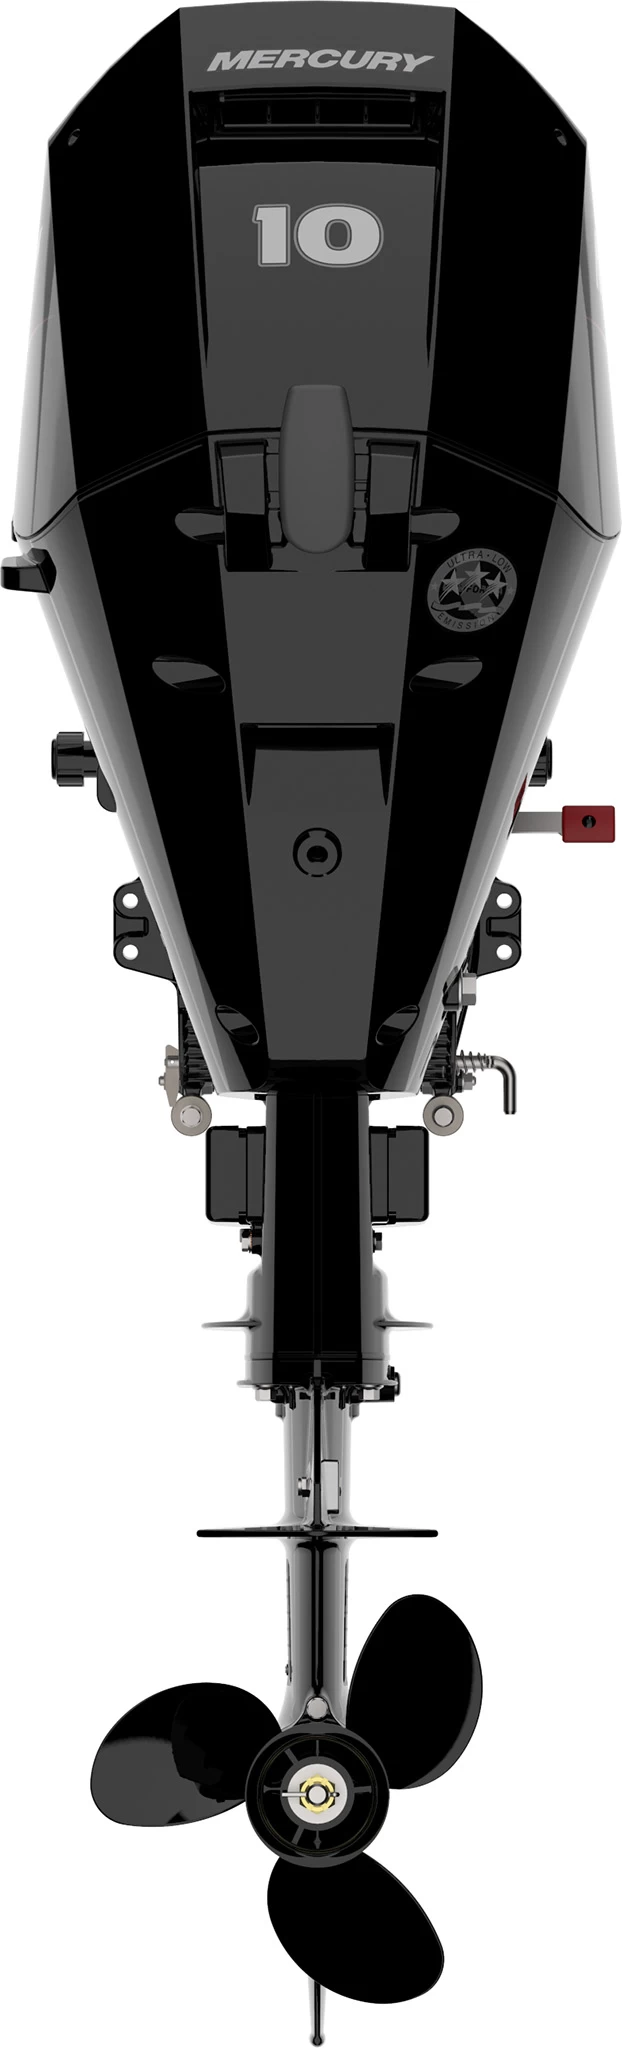 Четырехтактный лодочный мотор MERCURY F10 EL - 6